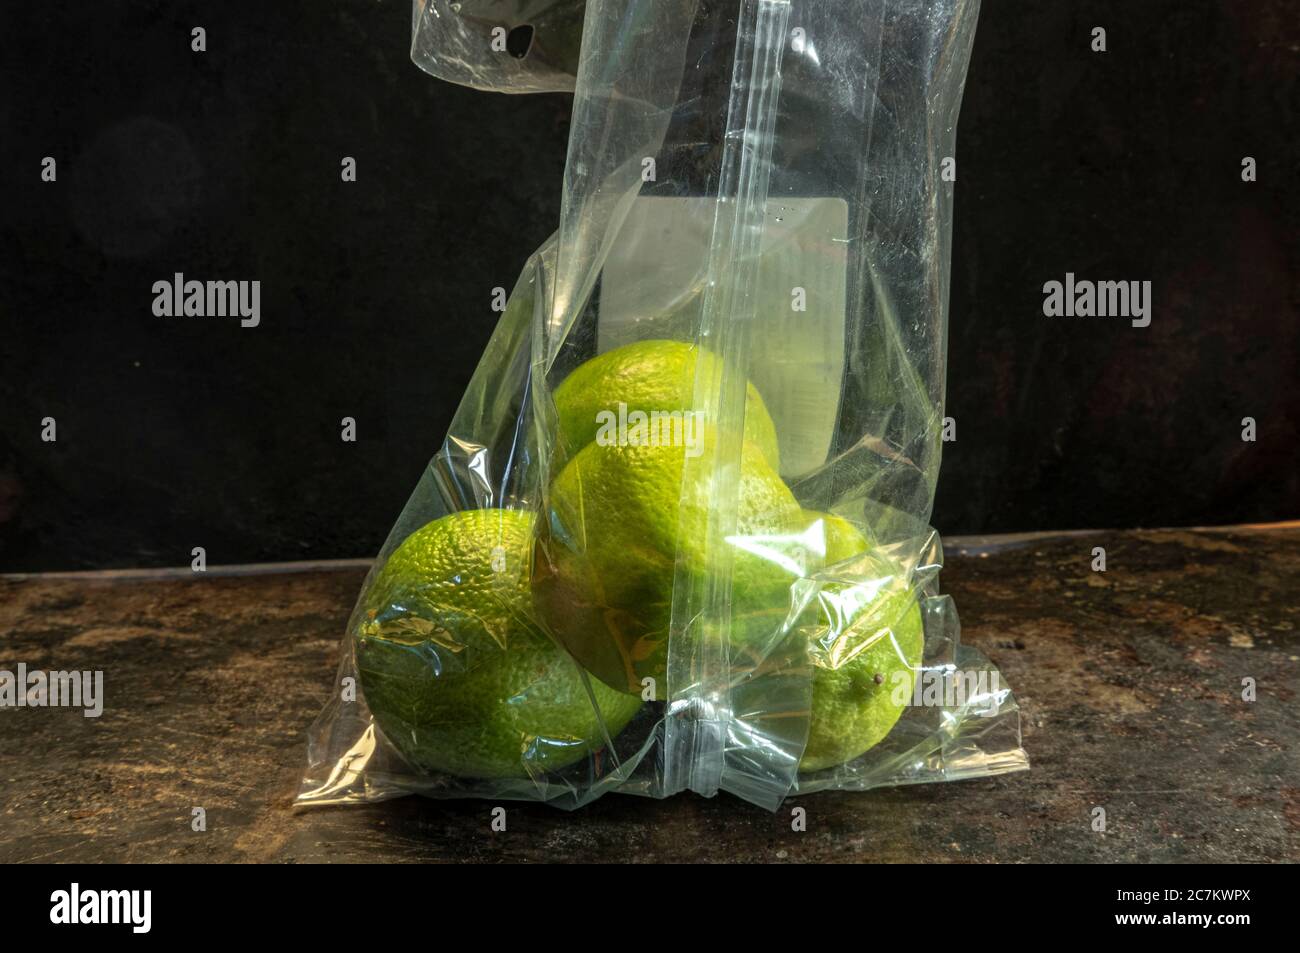 lemons packed in non-biodegradable plastics Stock Photo